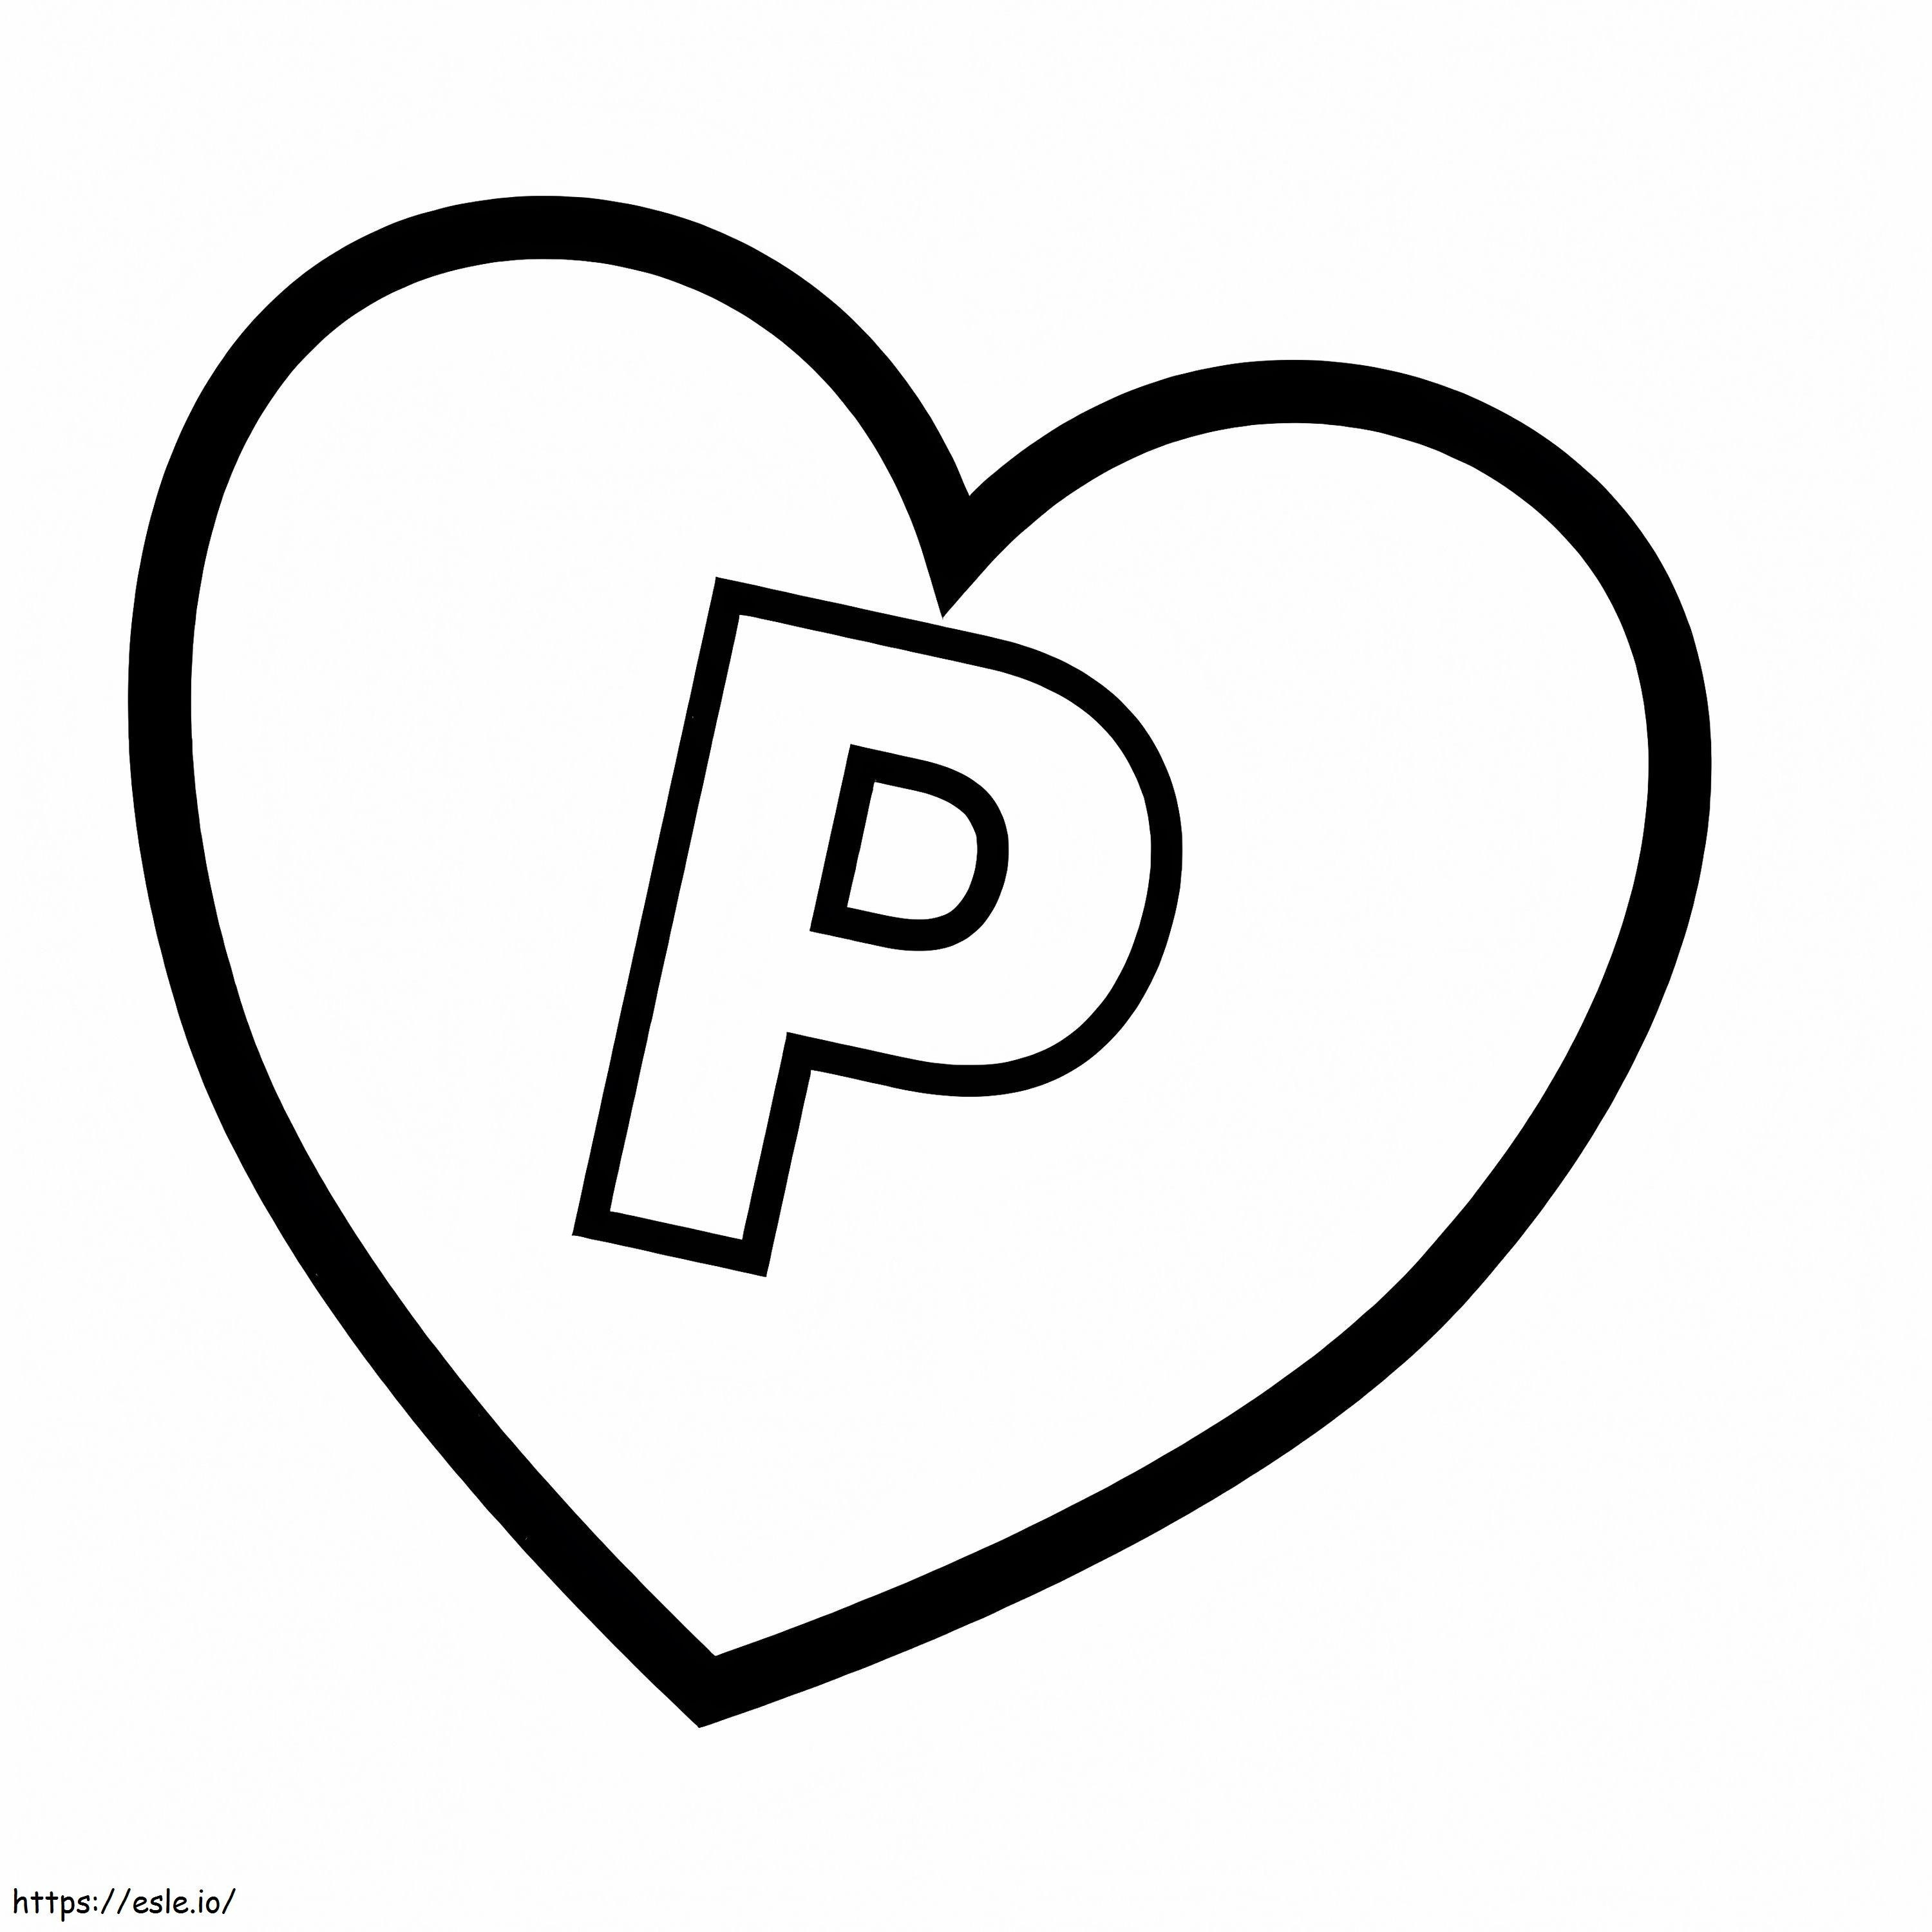 Letra P No Coração para colorir